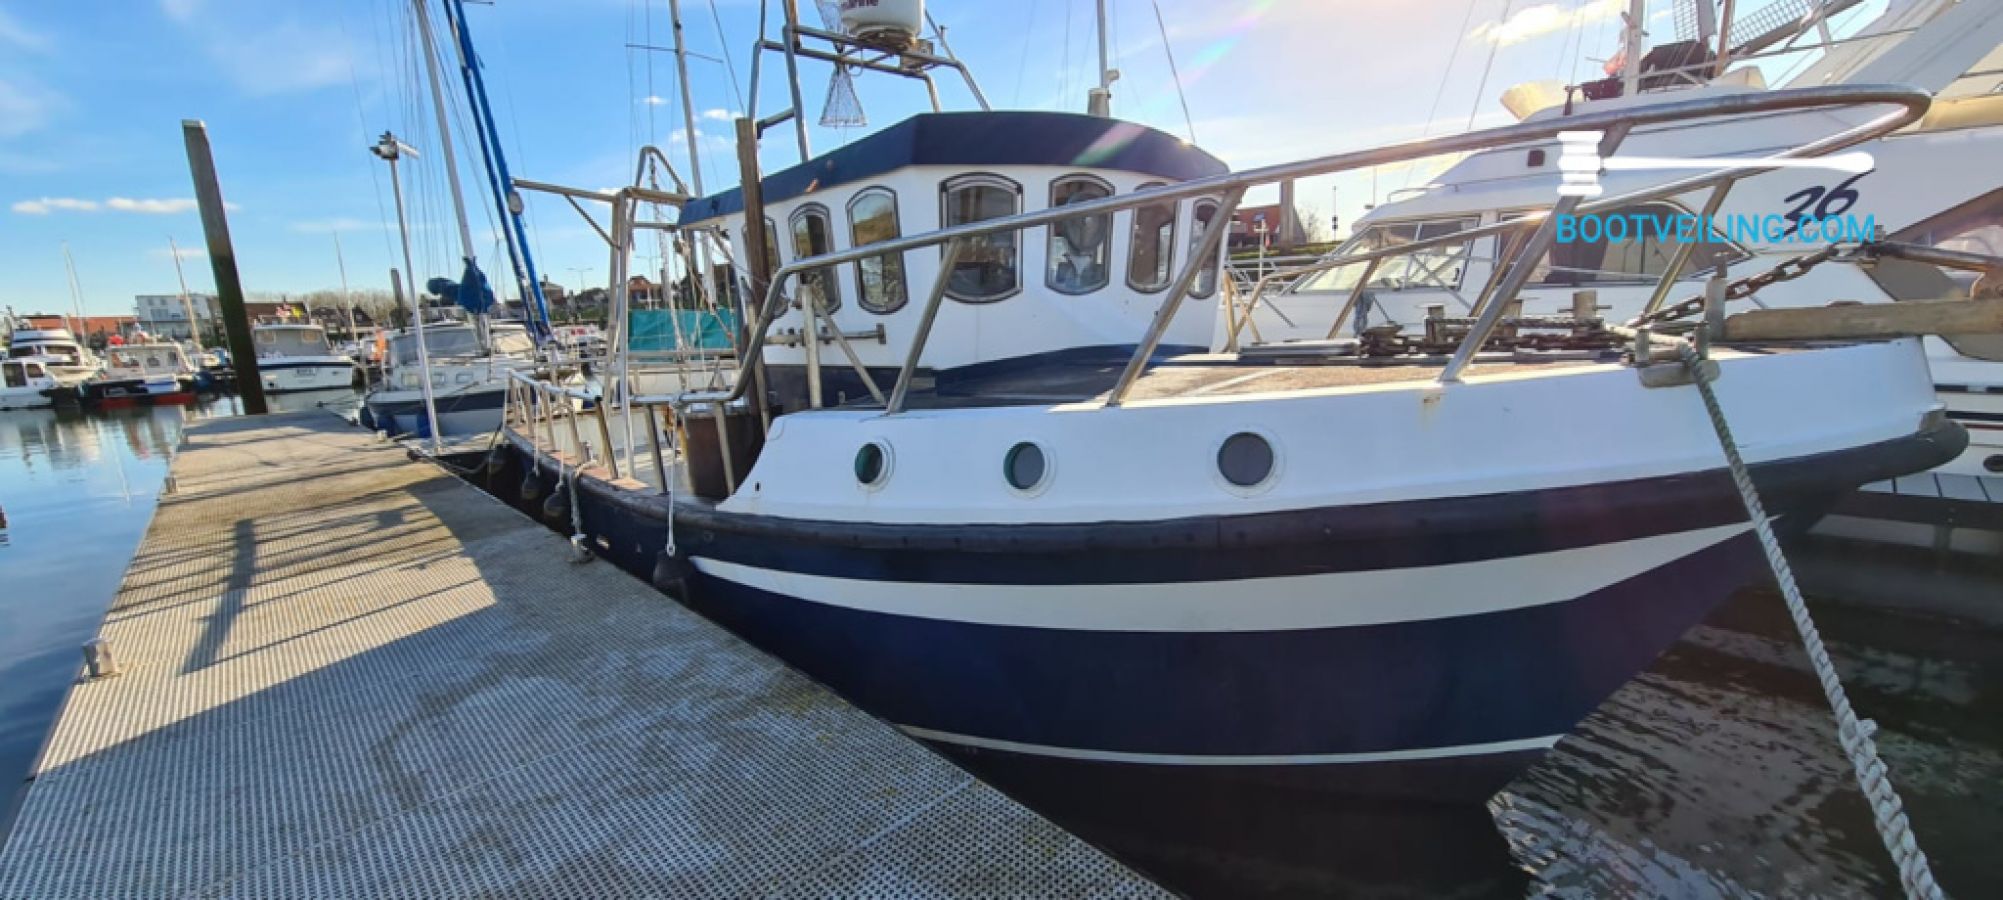 Dubbelzinnig Kinematica kosten Aquastar - Napier 30 Fast Fisherman - Beroepsschip te koop - Bootveiling.com